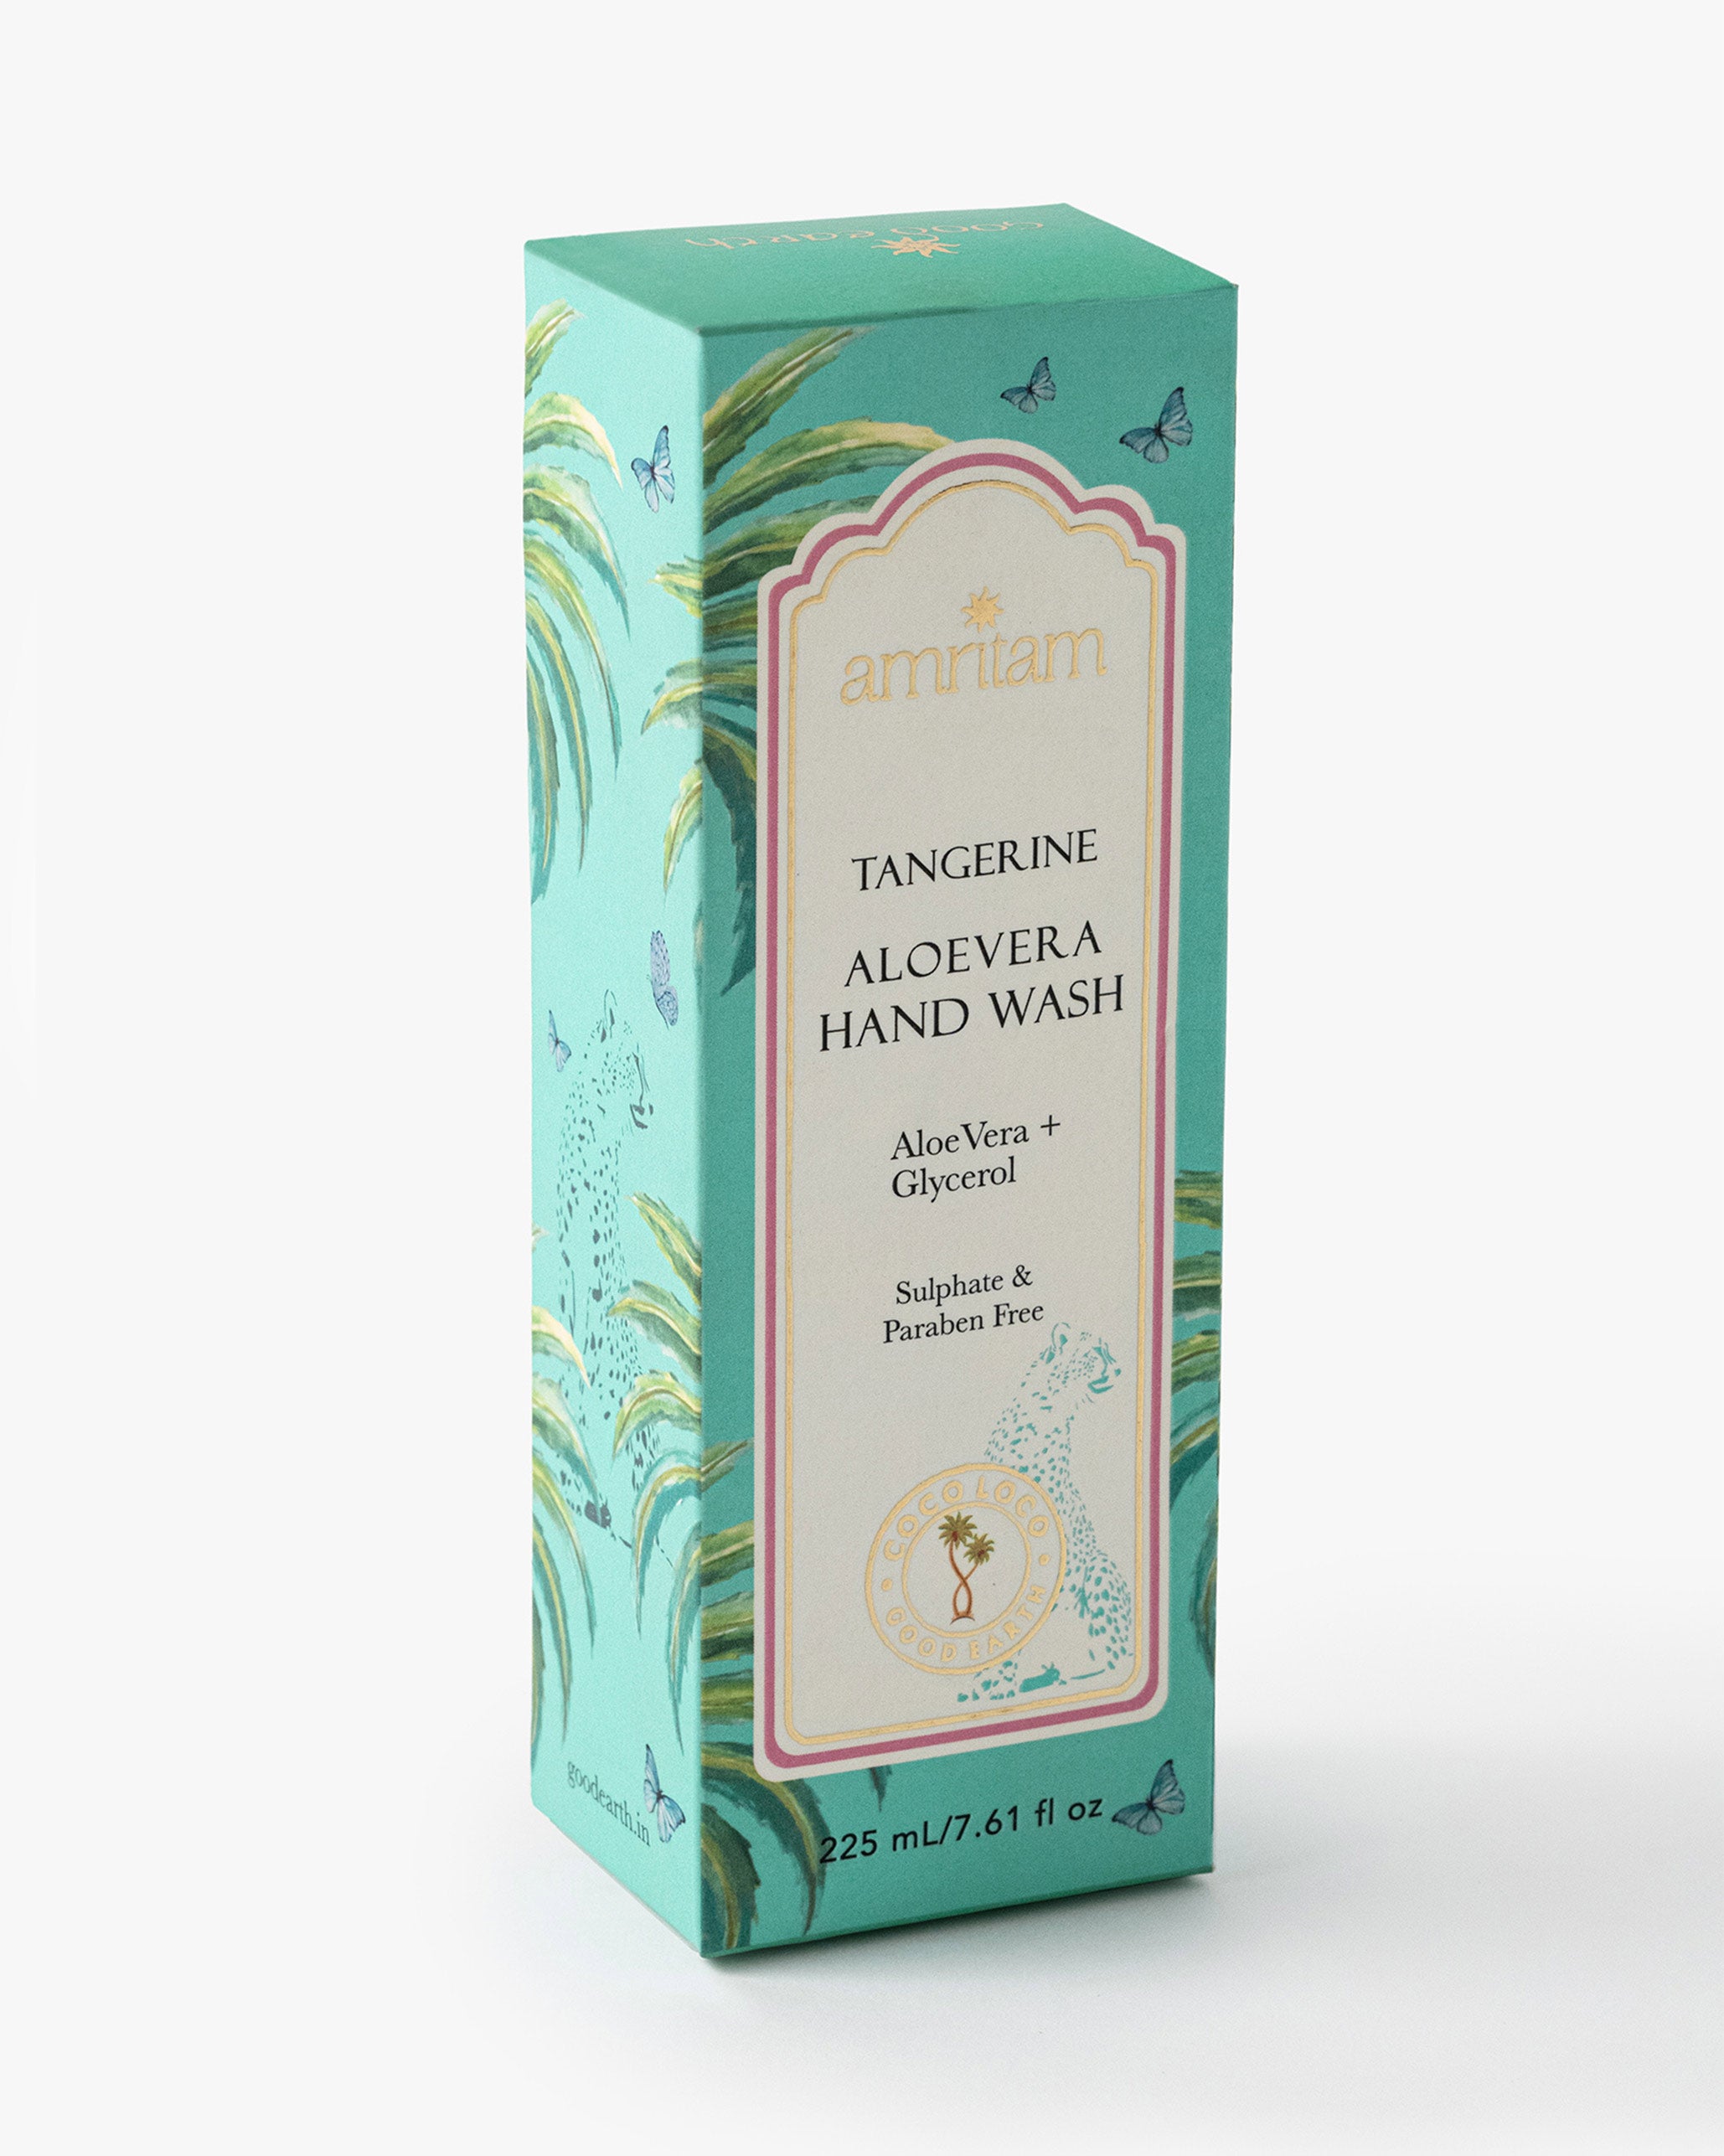 Amritam Tangerine Aloe vera Hand Wash